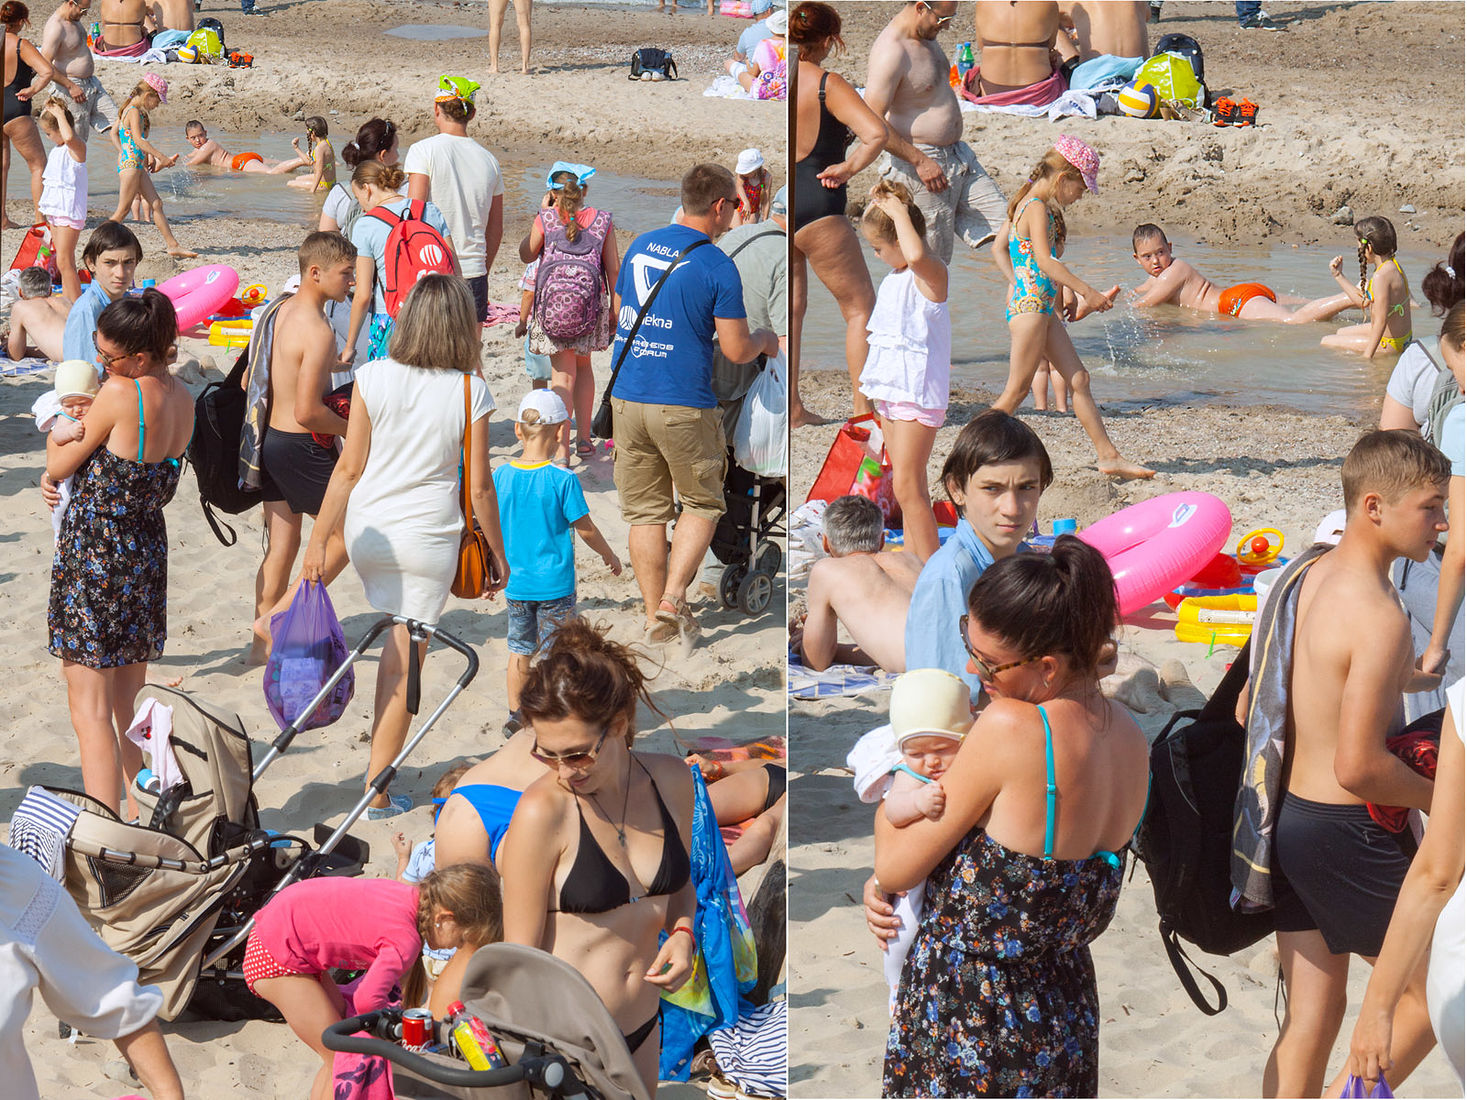 нудиский пляж с голыми детьми фото 71